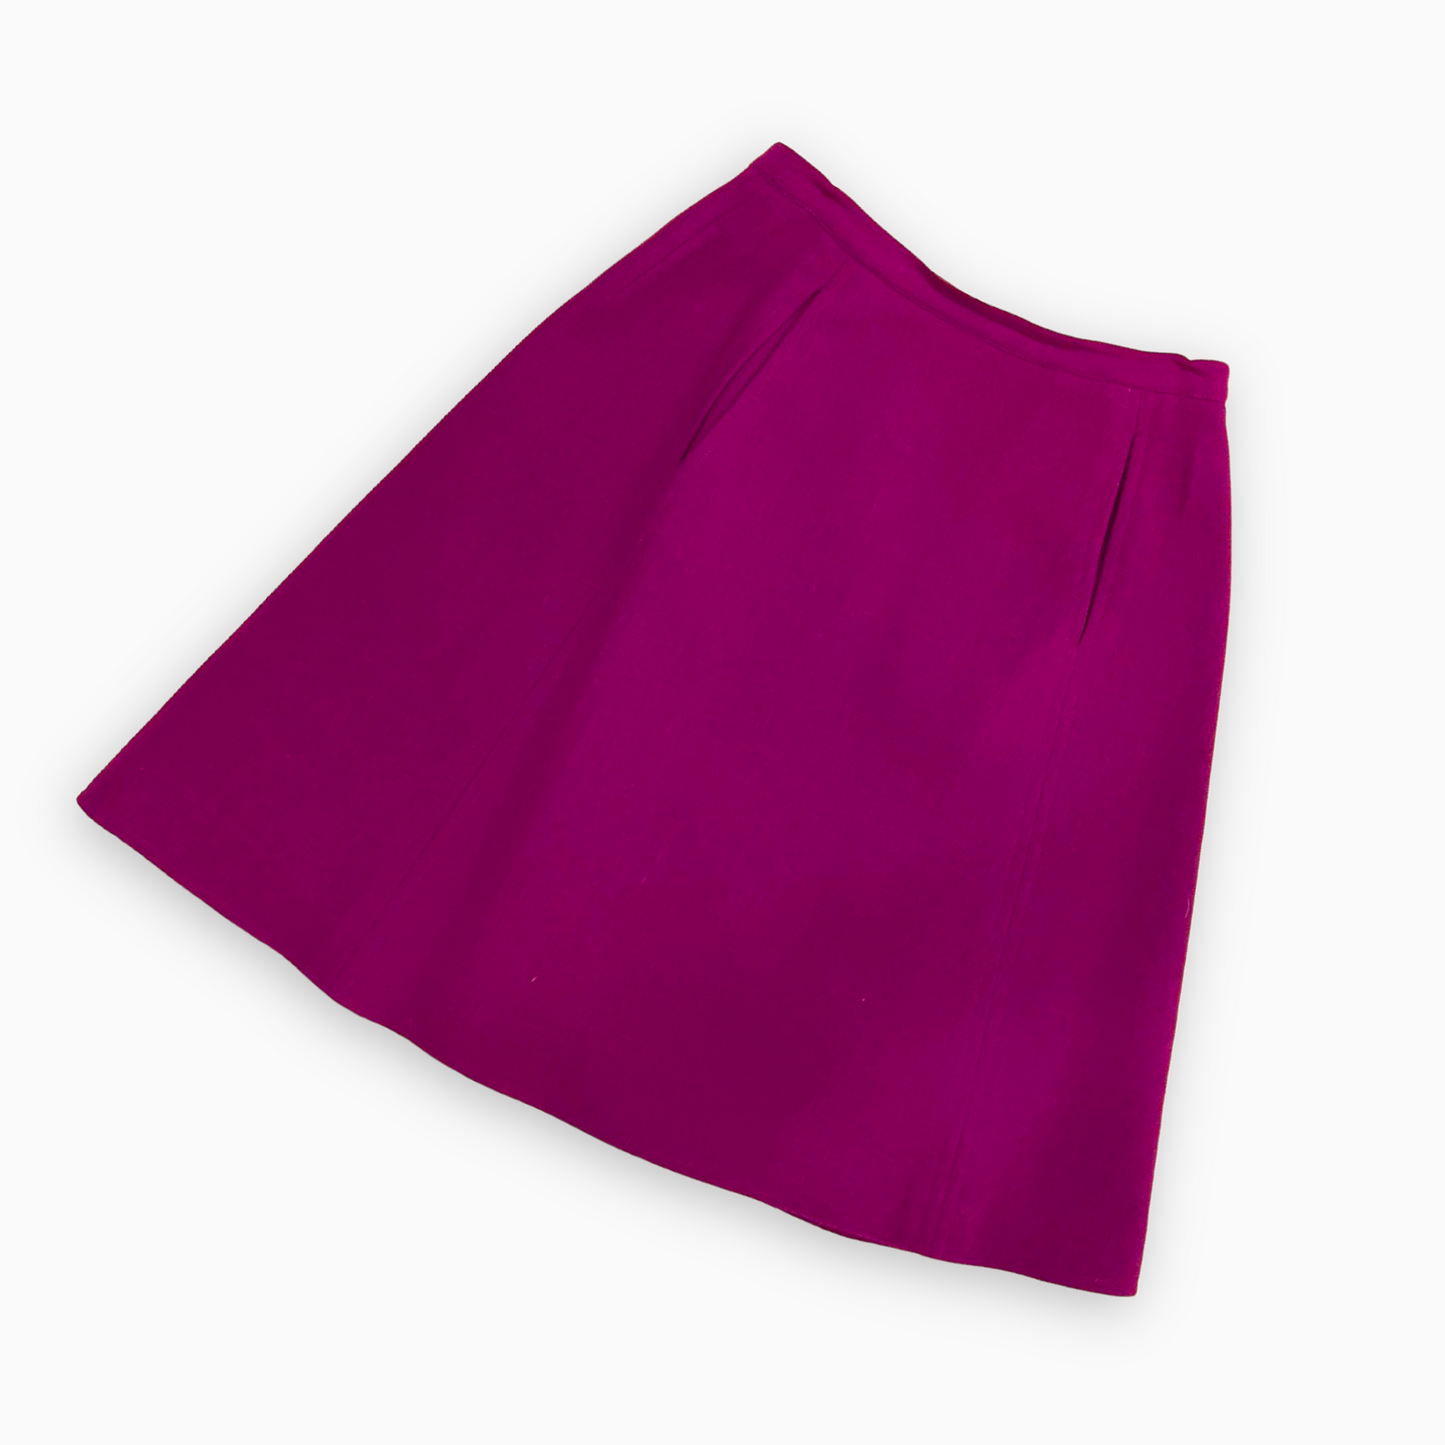 Christian Lacroix Purple Skirt Suit